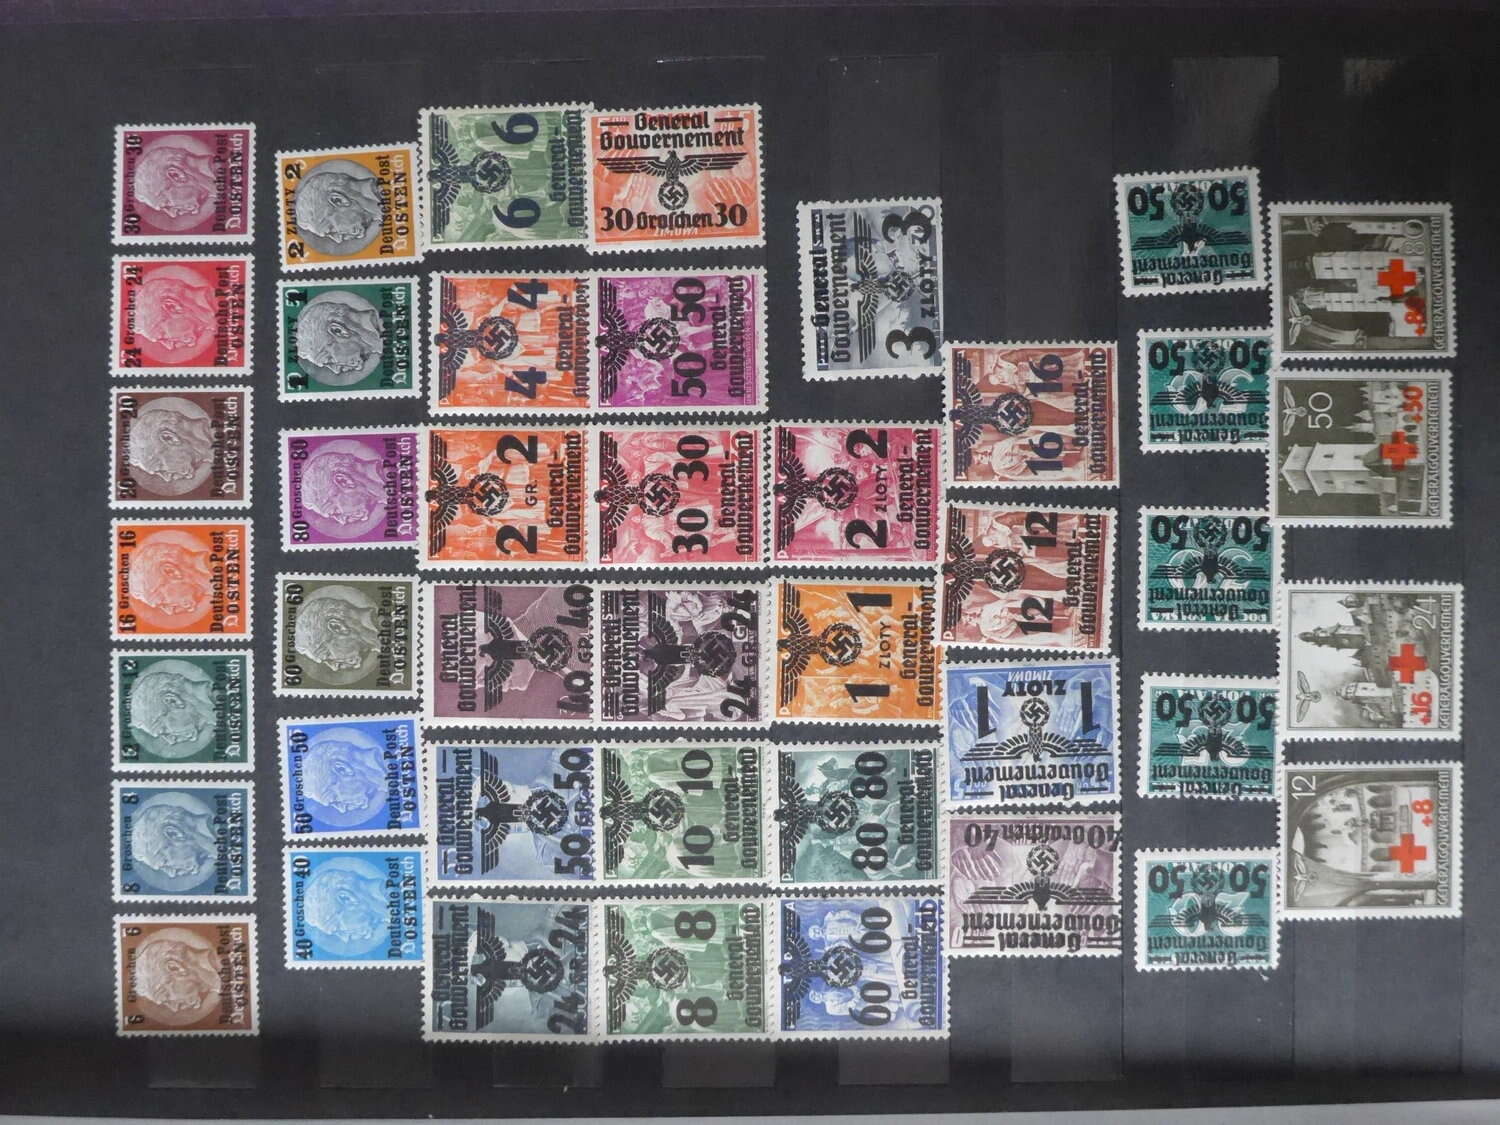 Lot 2 - sammlungen und posten sammlernachlässe -  Deutsche Briefmarken AG 6th Large Lot Auction Deutsche Briefmarken AG